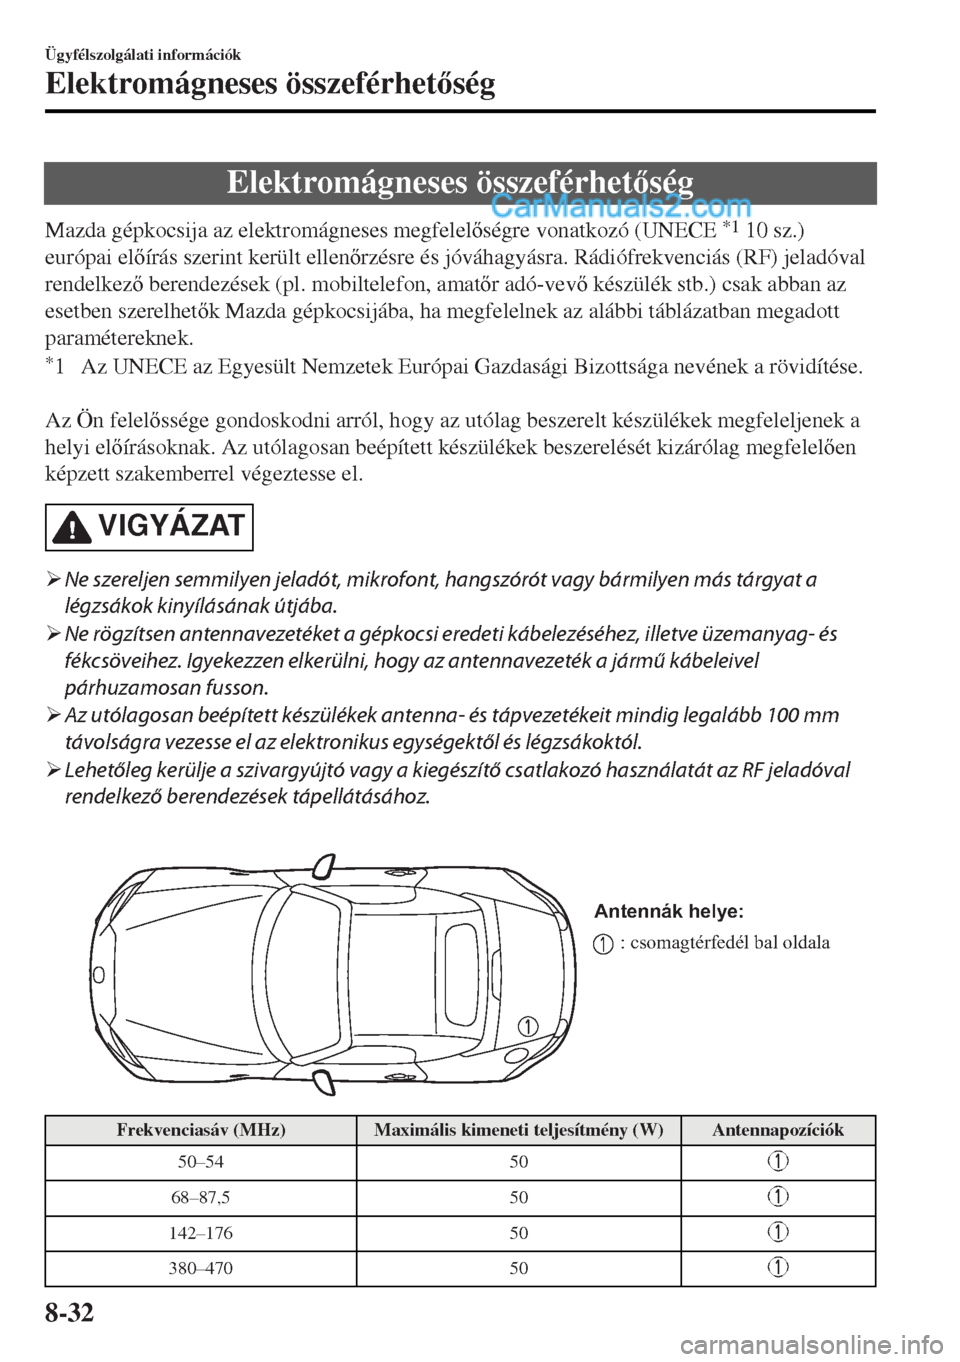 MAZDA MODEL MX-5 2017  Kezelési útmutató (in Hungarian) Elektromágneses összeférhetség
Mazda gépkocsija az elektromágneses megfelelségre vonatkozó (UNECE *1 10 sz.)
európai elírás szerint került ellenrzésre és jóváhagyásra. Rádió